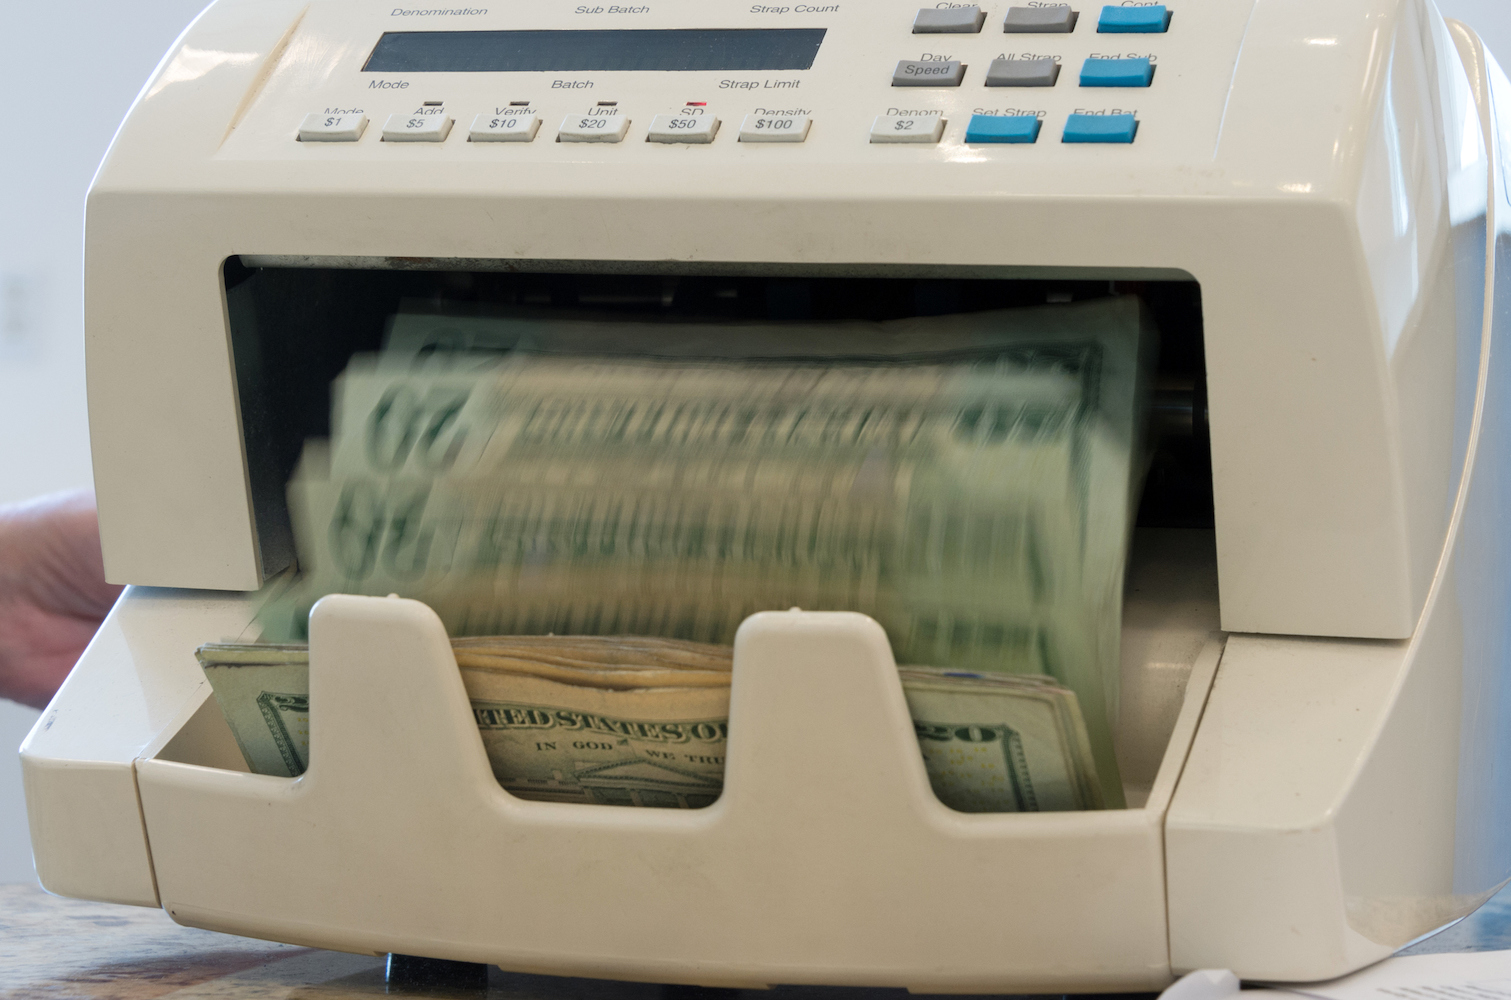 Yirmi dolarlık banknotları sayan makine